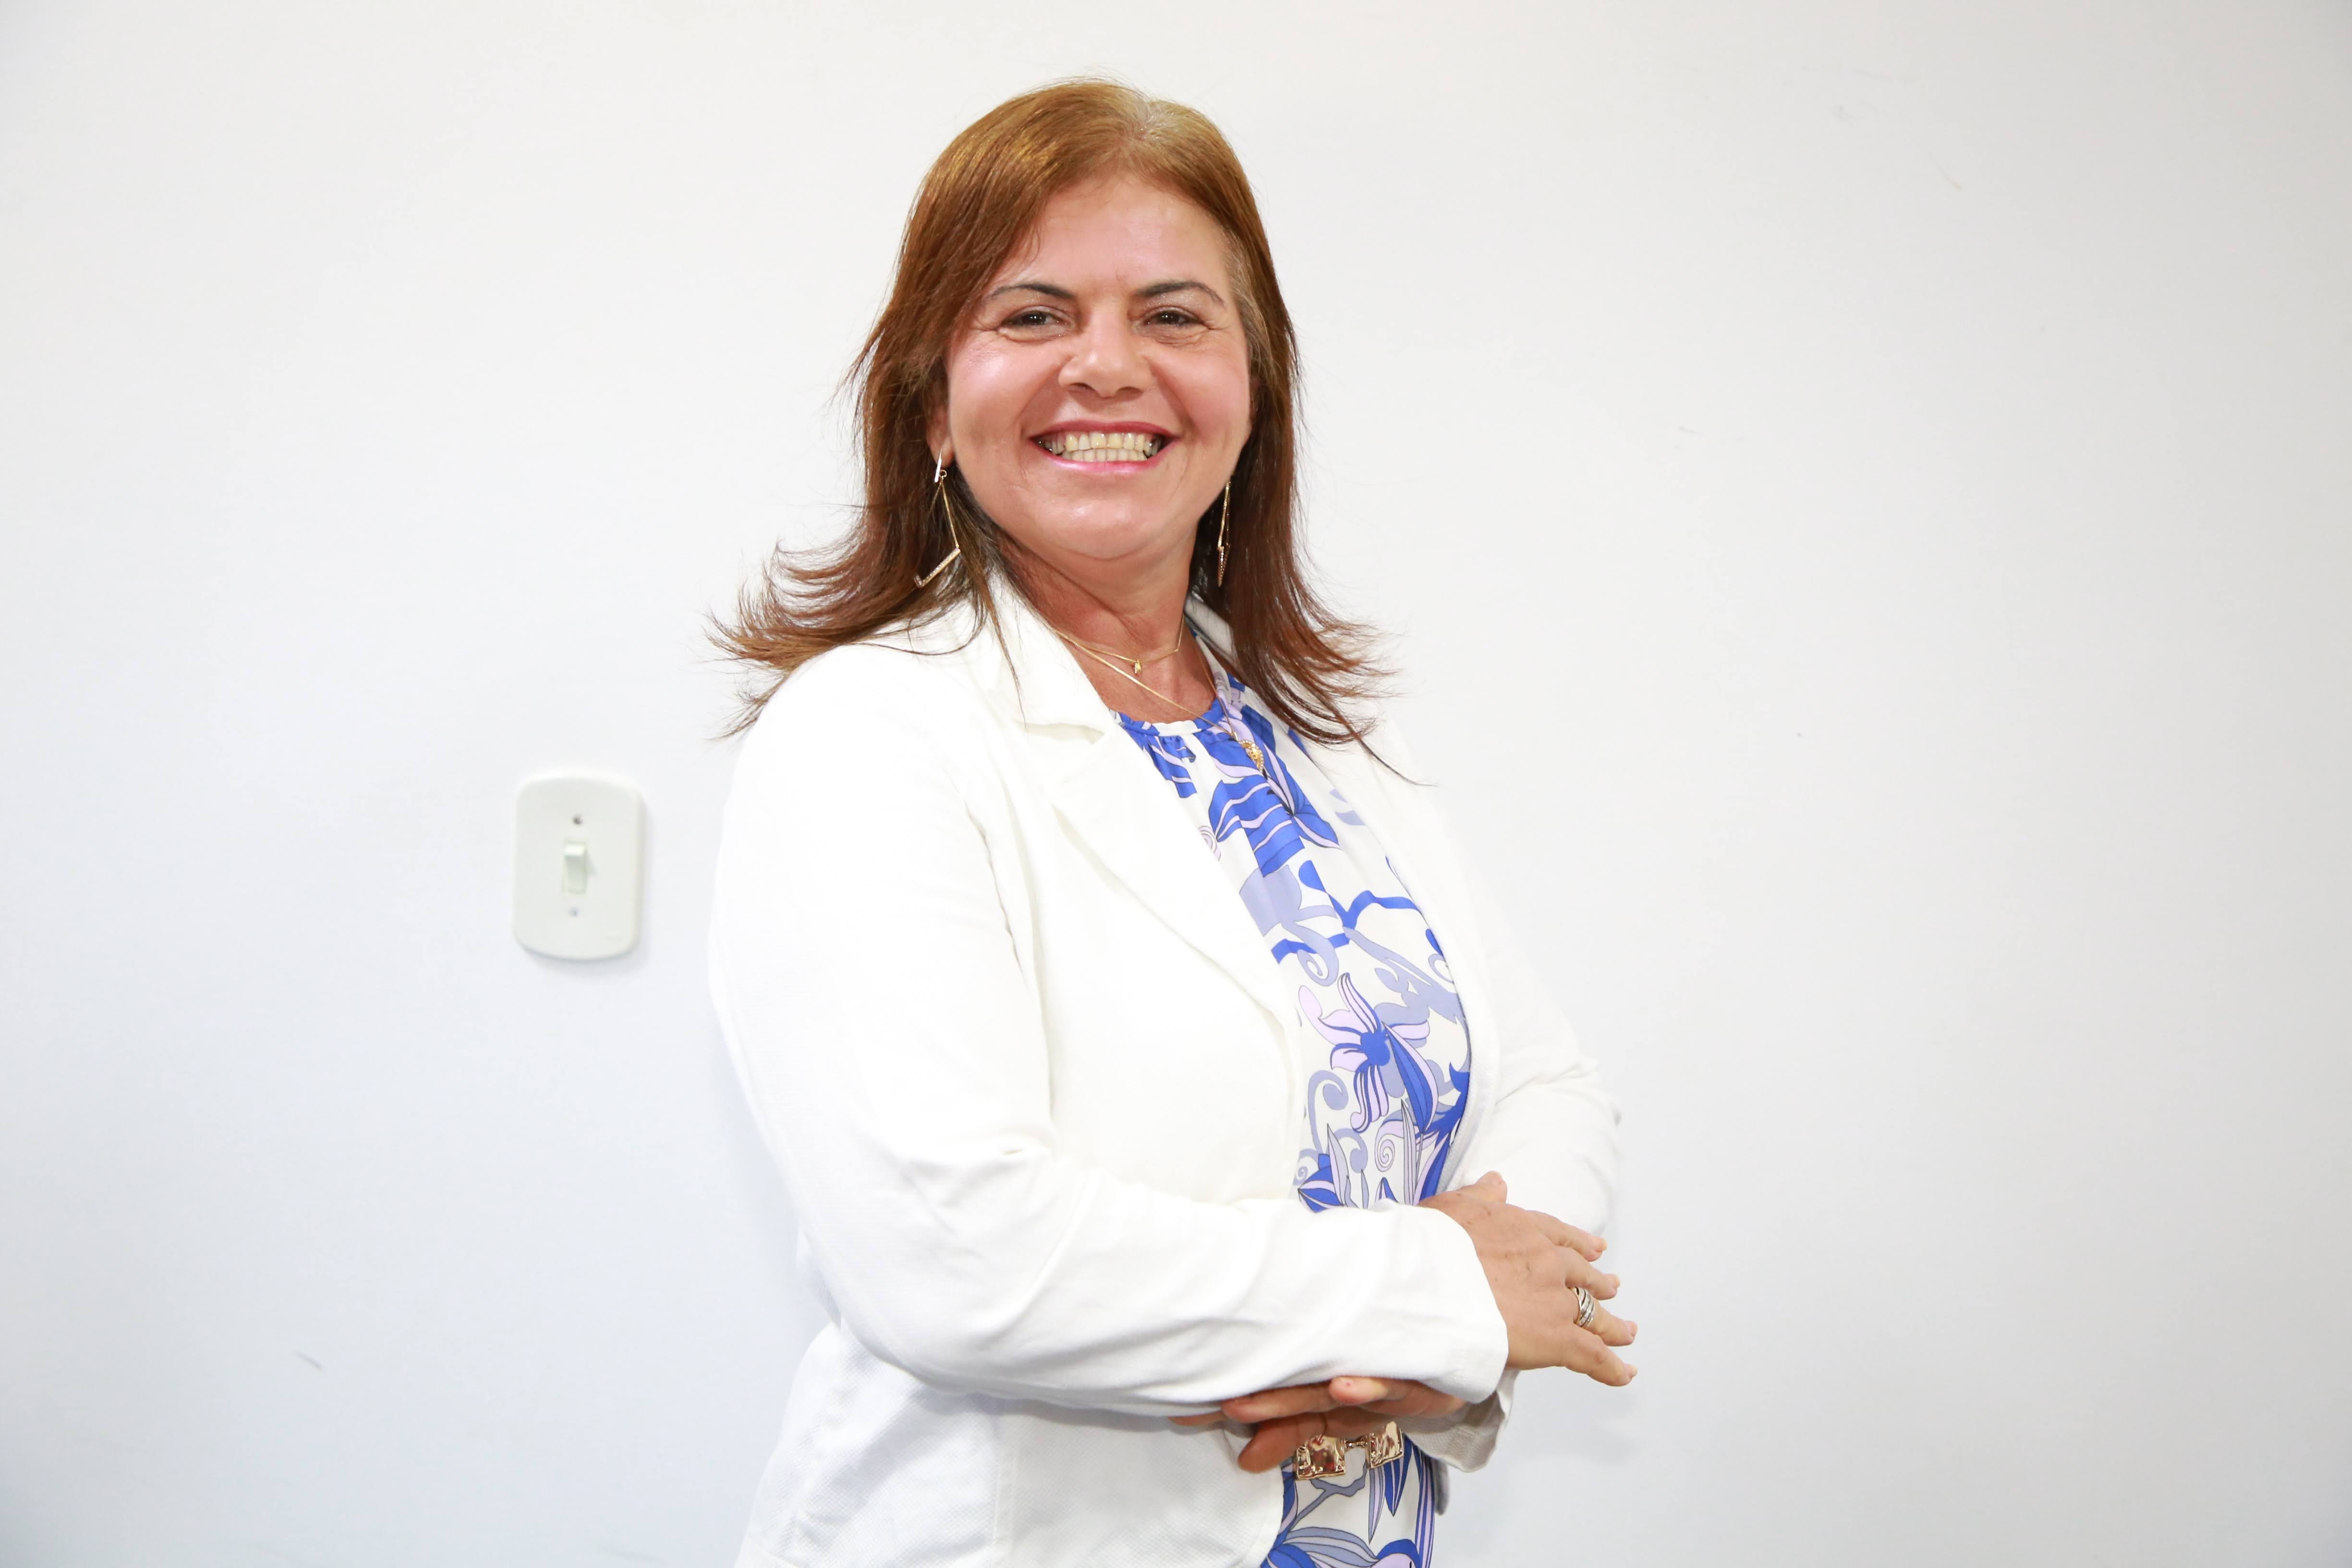 Josefa Neide de Souza - 2022-2025